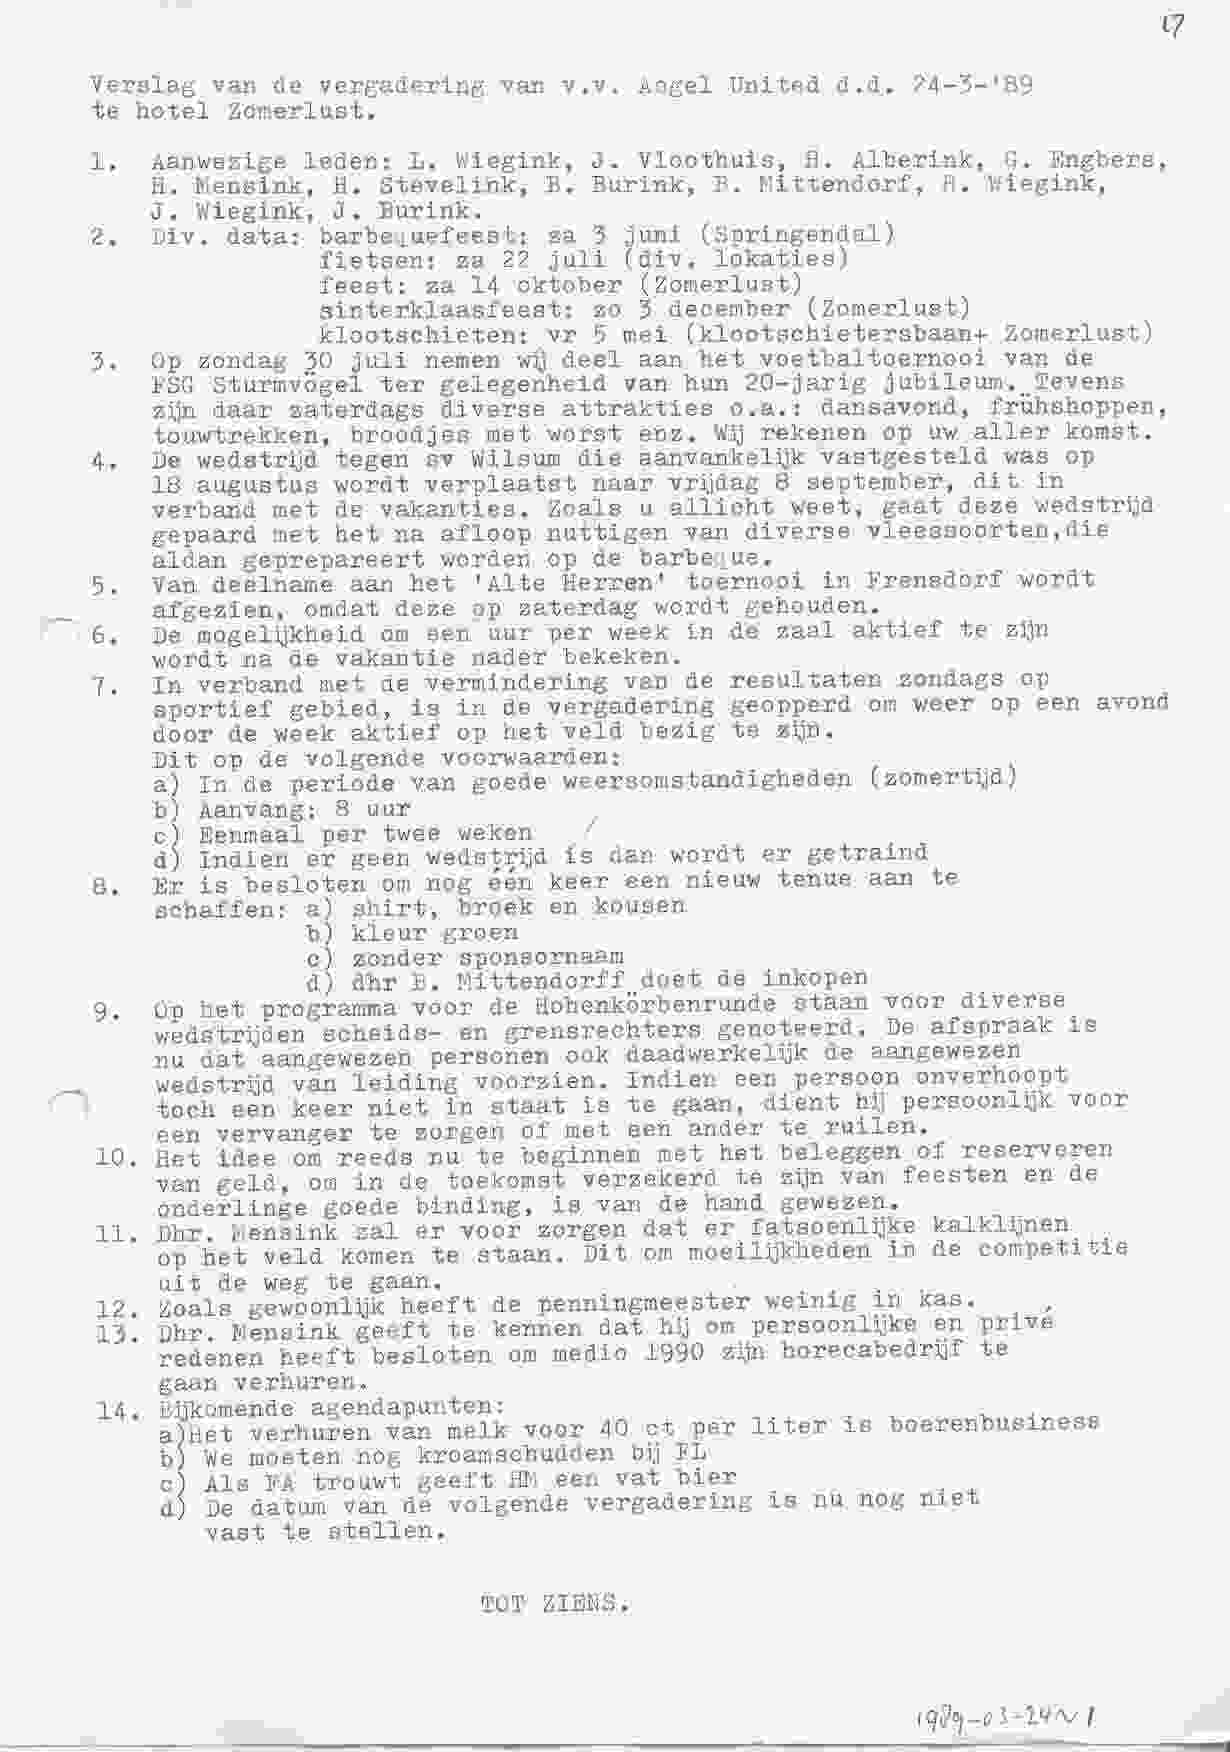 Notulen van de vergadering op 1989-03-24